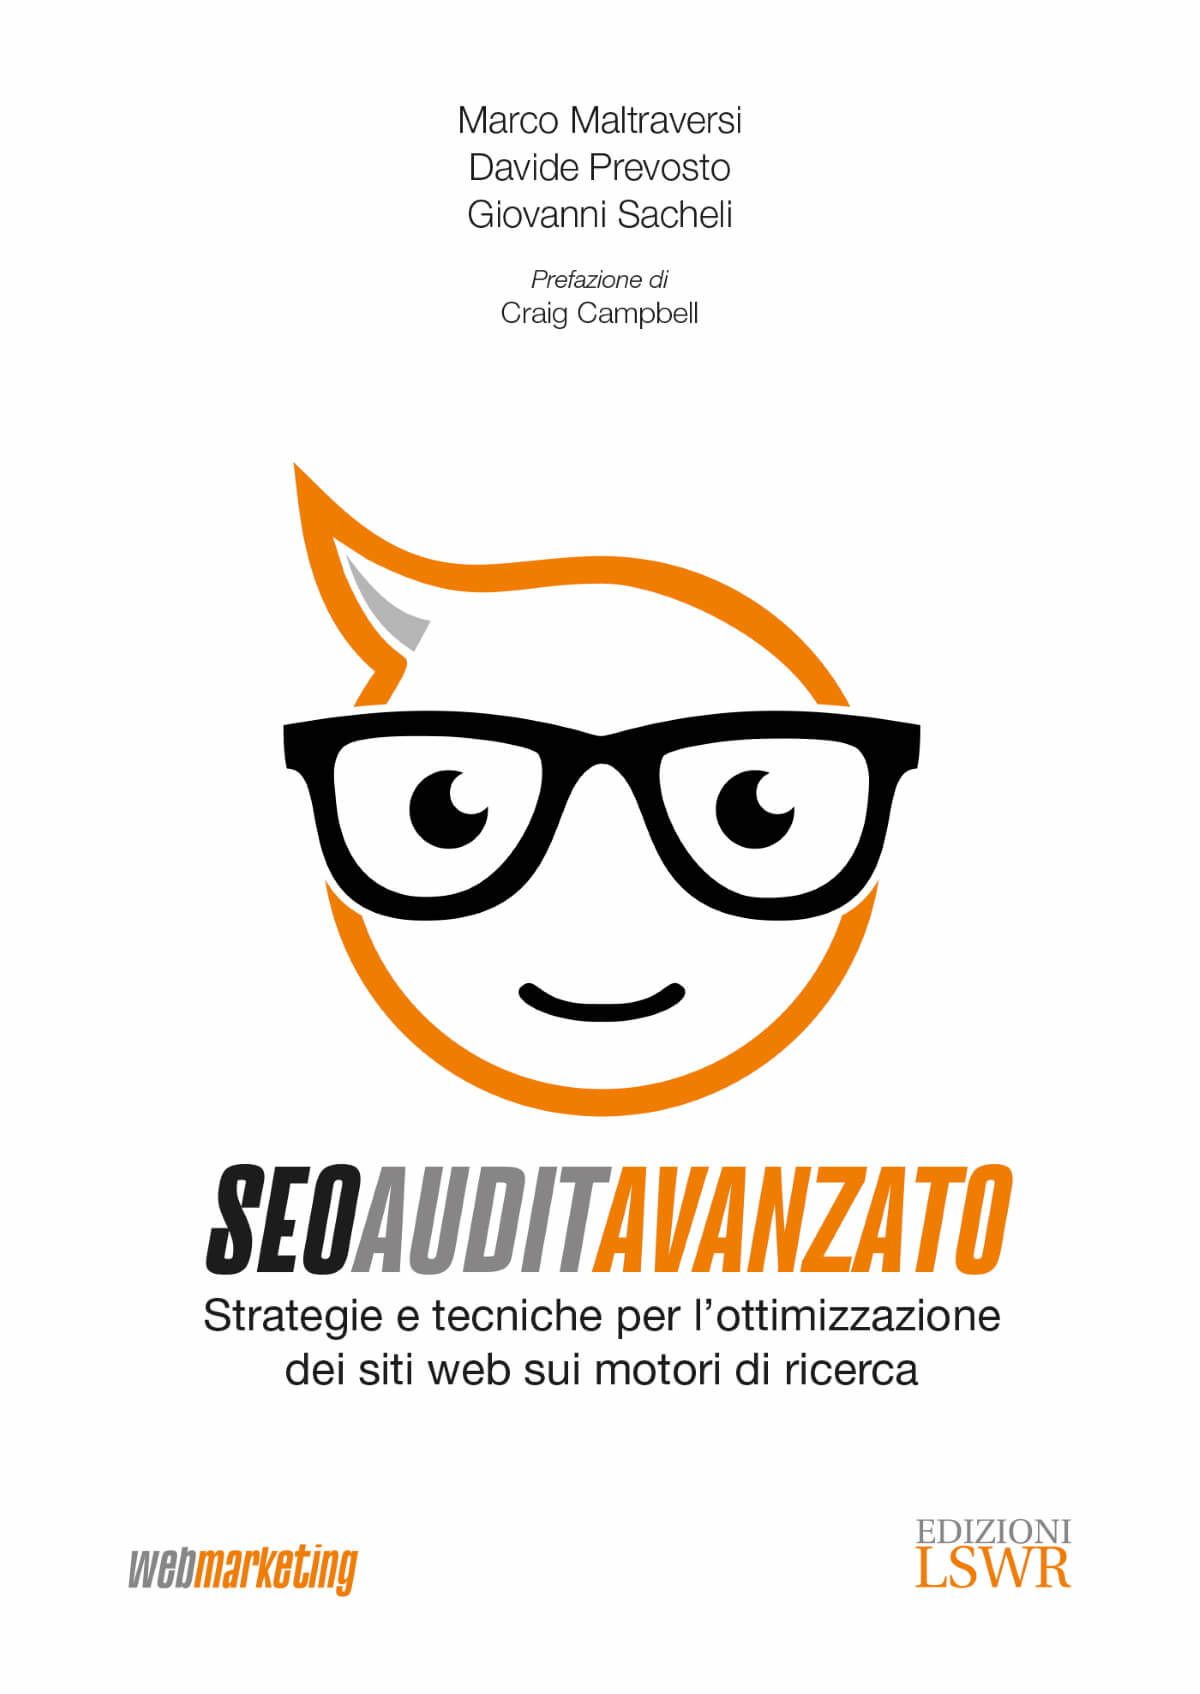 SEO Audit Avanzato, il manuale di Marco Maltraversi, Davide Prevosto e Giovanni Sacheli